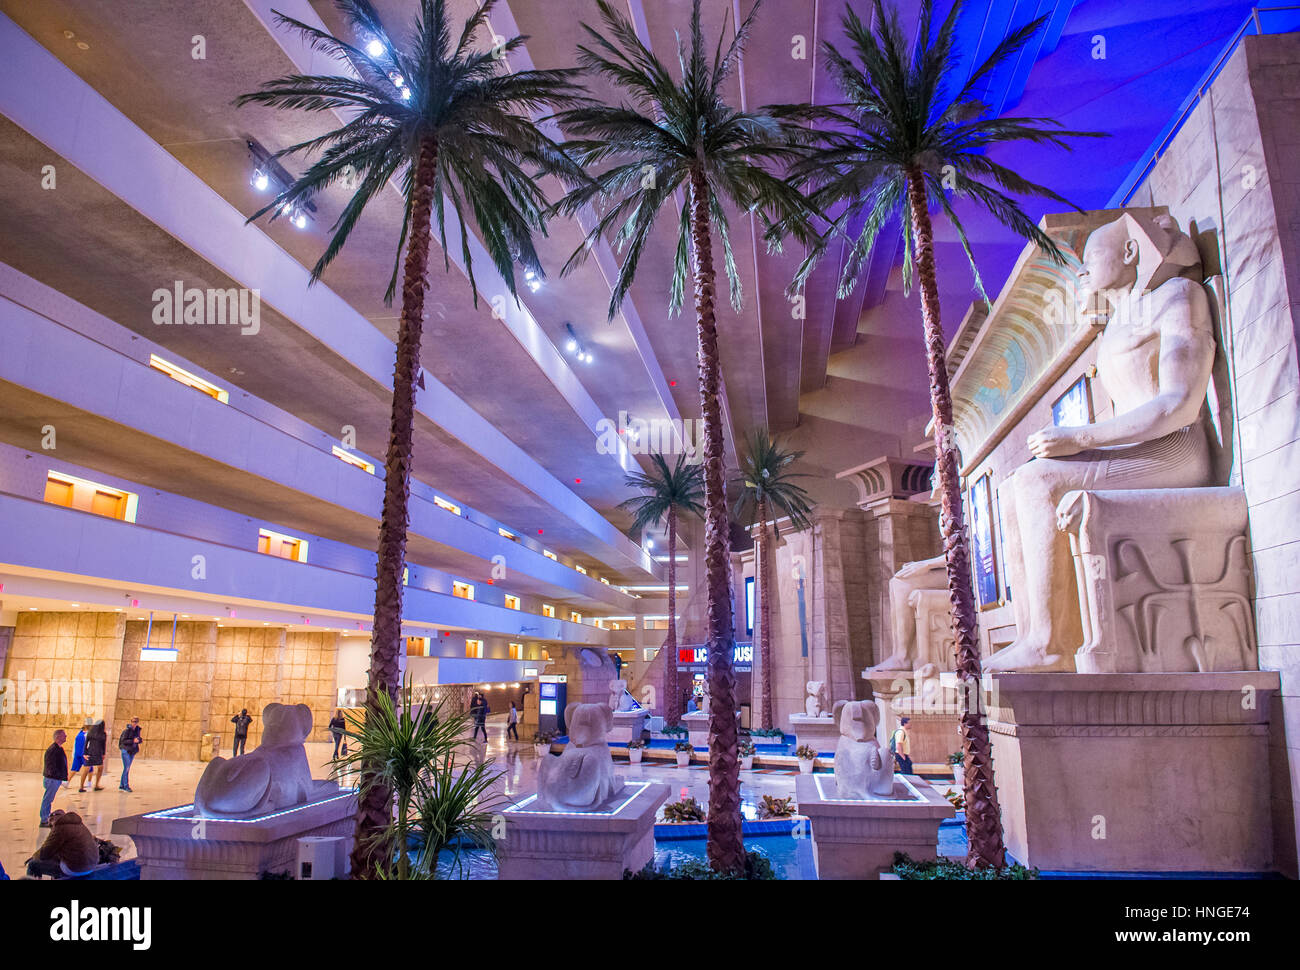 El Luxor Hotel and Casino en Las Vegas Strip, contiene un total de 4.400 habitaciones que recubre el interior de las paredes de una torre de estilo piramidal Foto de stock